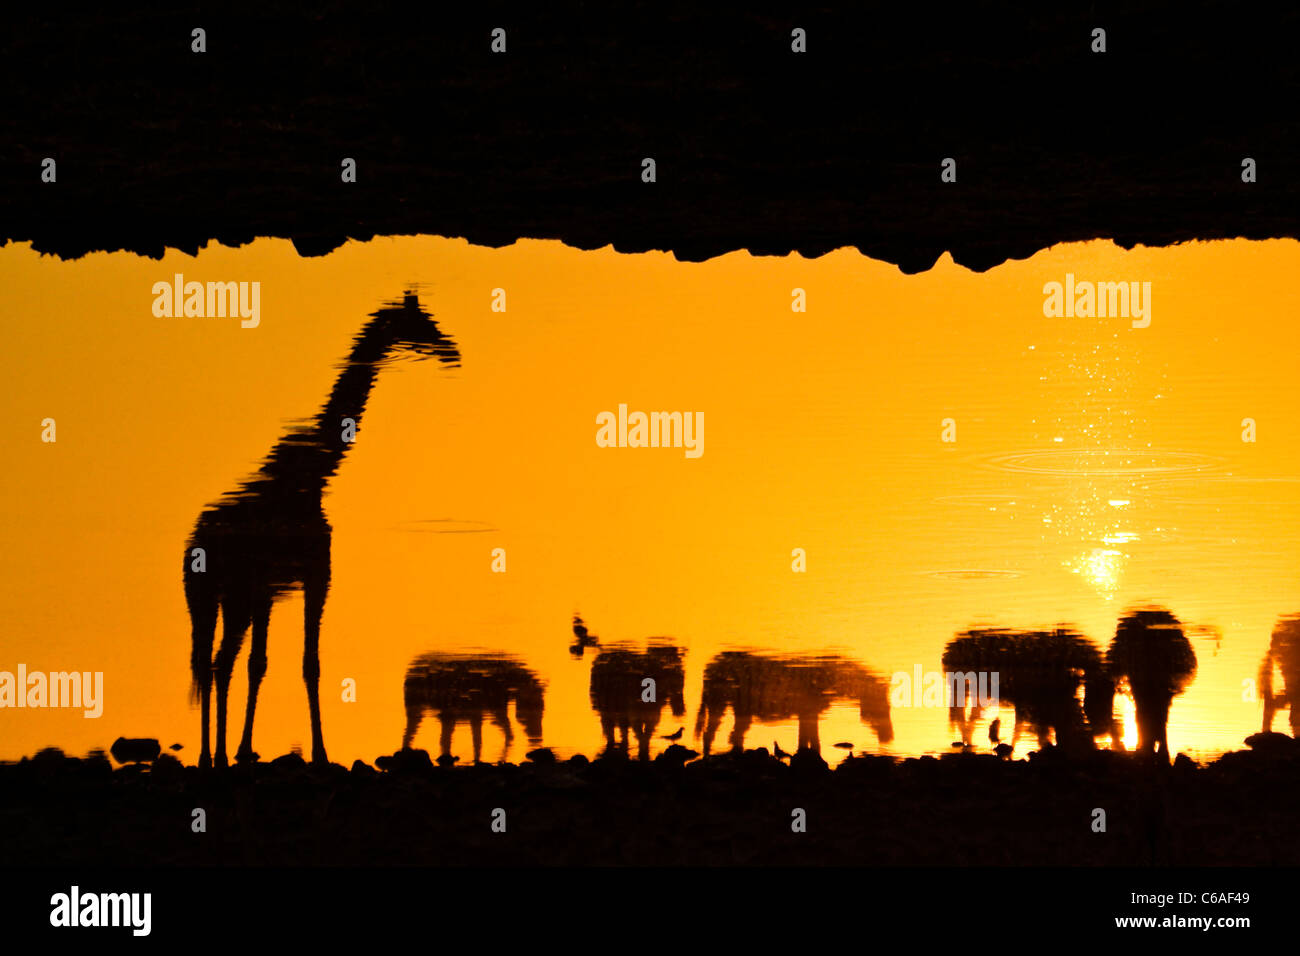 Animals reflected in waterhole at sunset, Etosha NP, Namibia Stock Photo